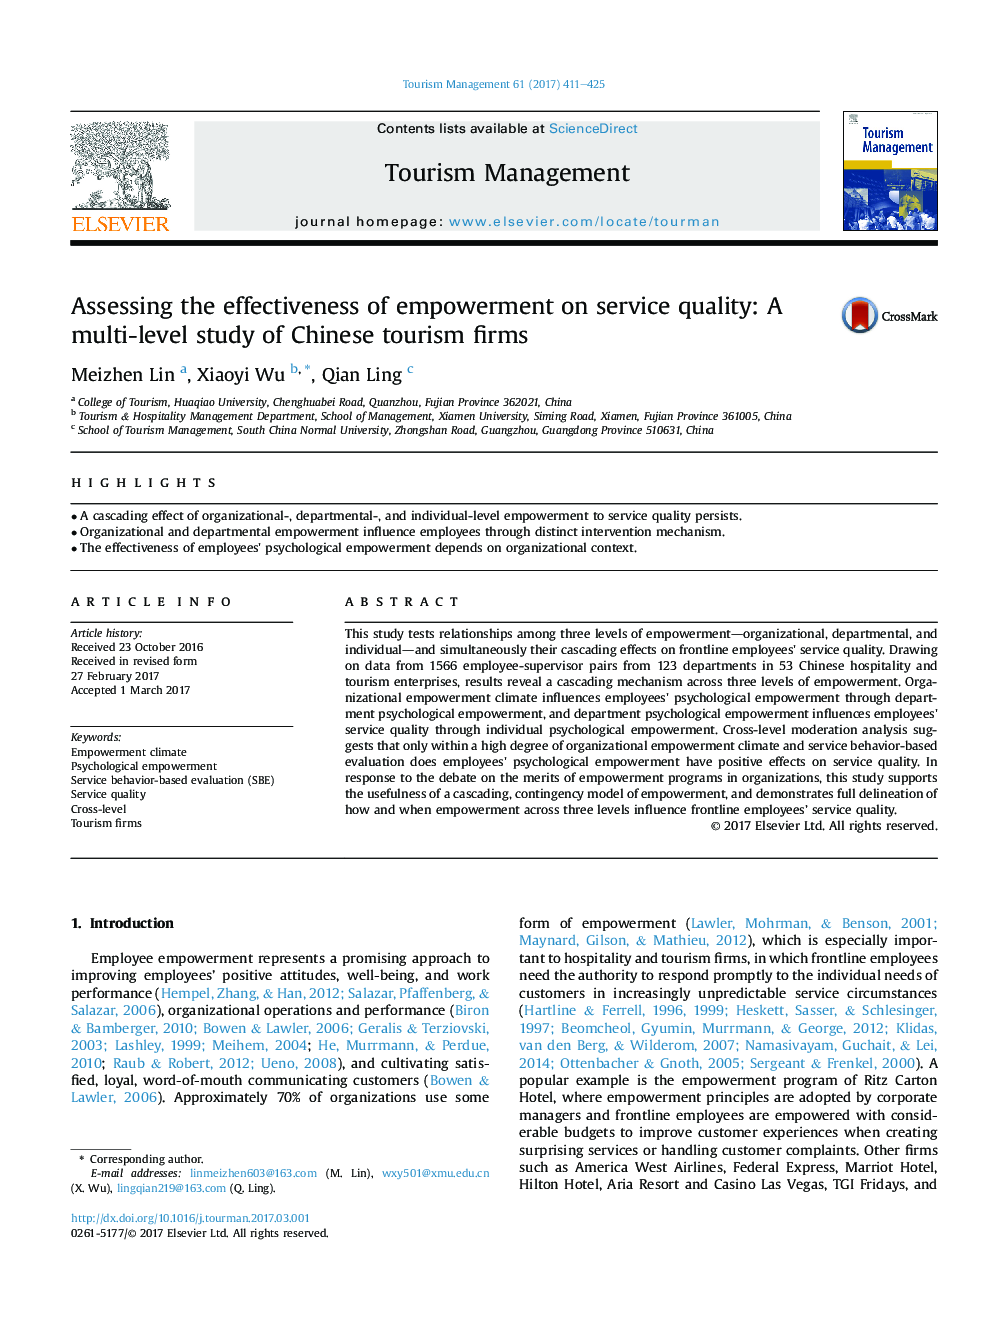 ارزیابی اثربخشی توانمندسازی بر کیفیت خدمات: یک مطالعه چند سطحی از شرکت های گردشگری چینی 